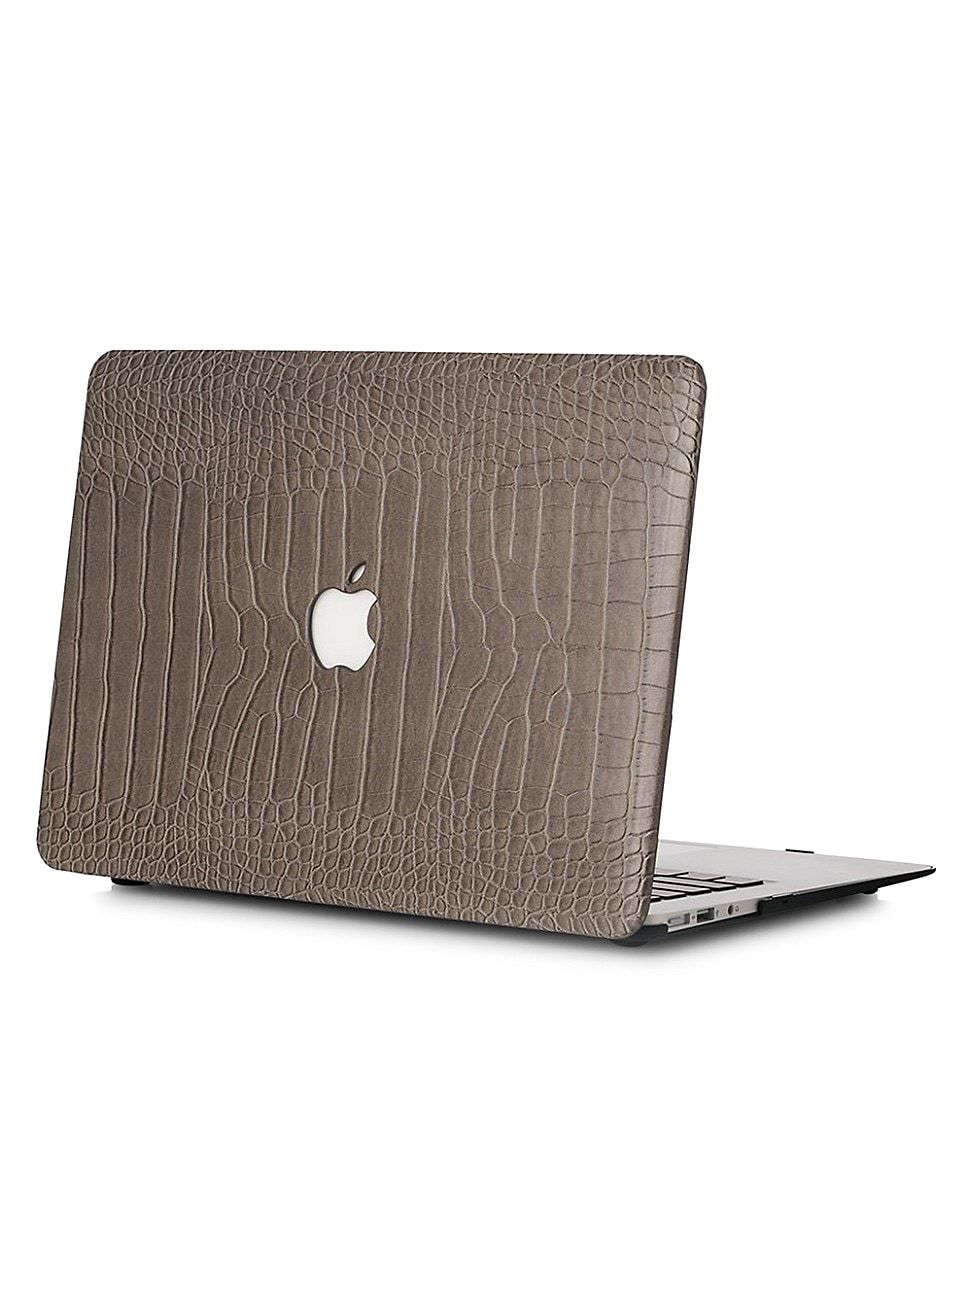 Faux Crocodile MacBook Case - Greyson | Saks Fifth Avenue